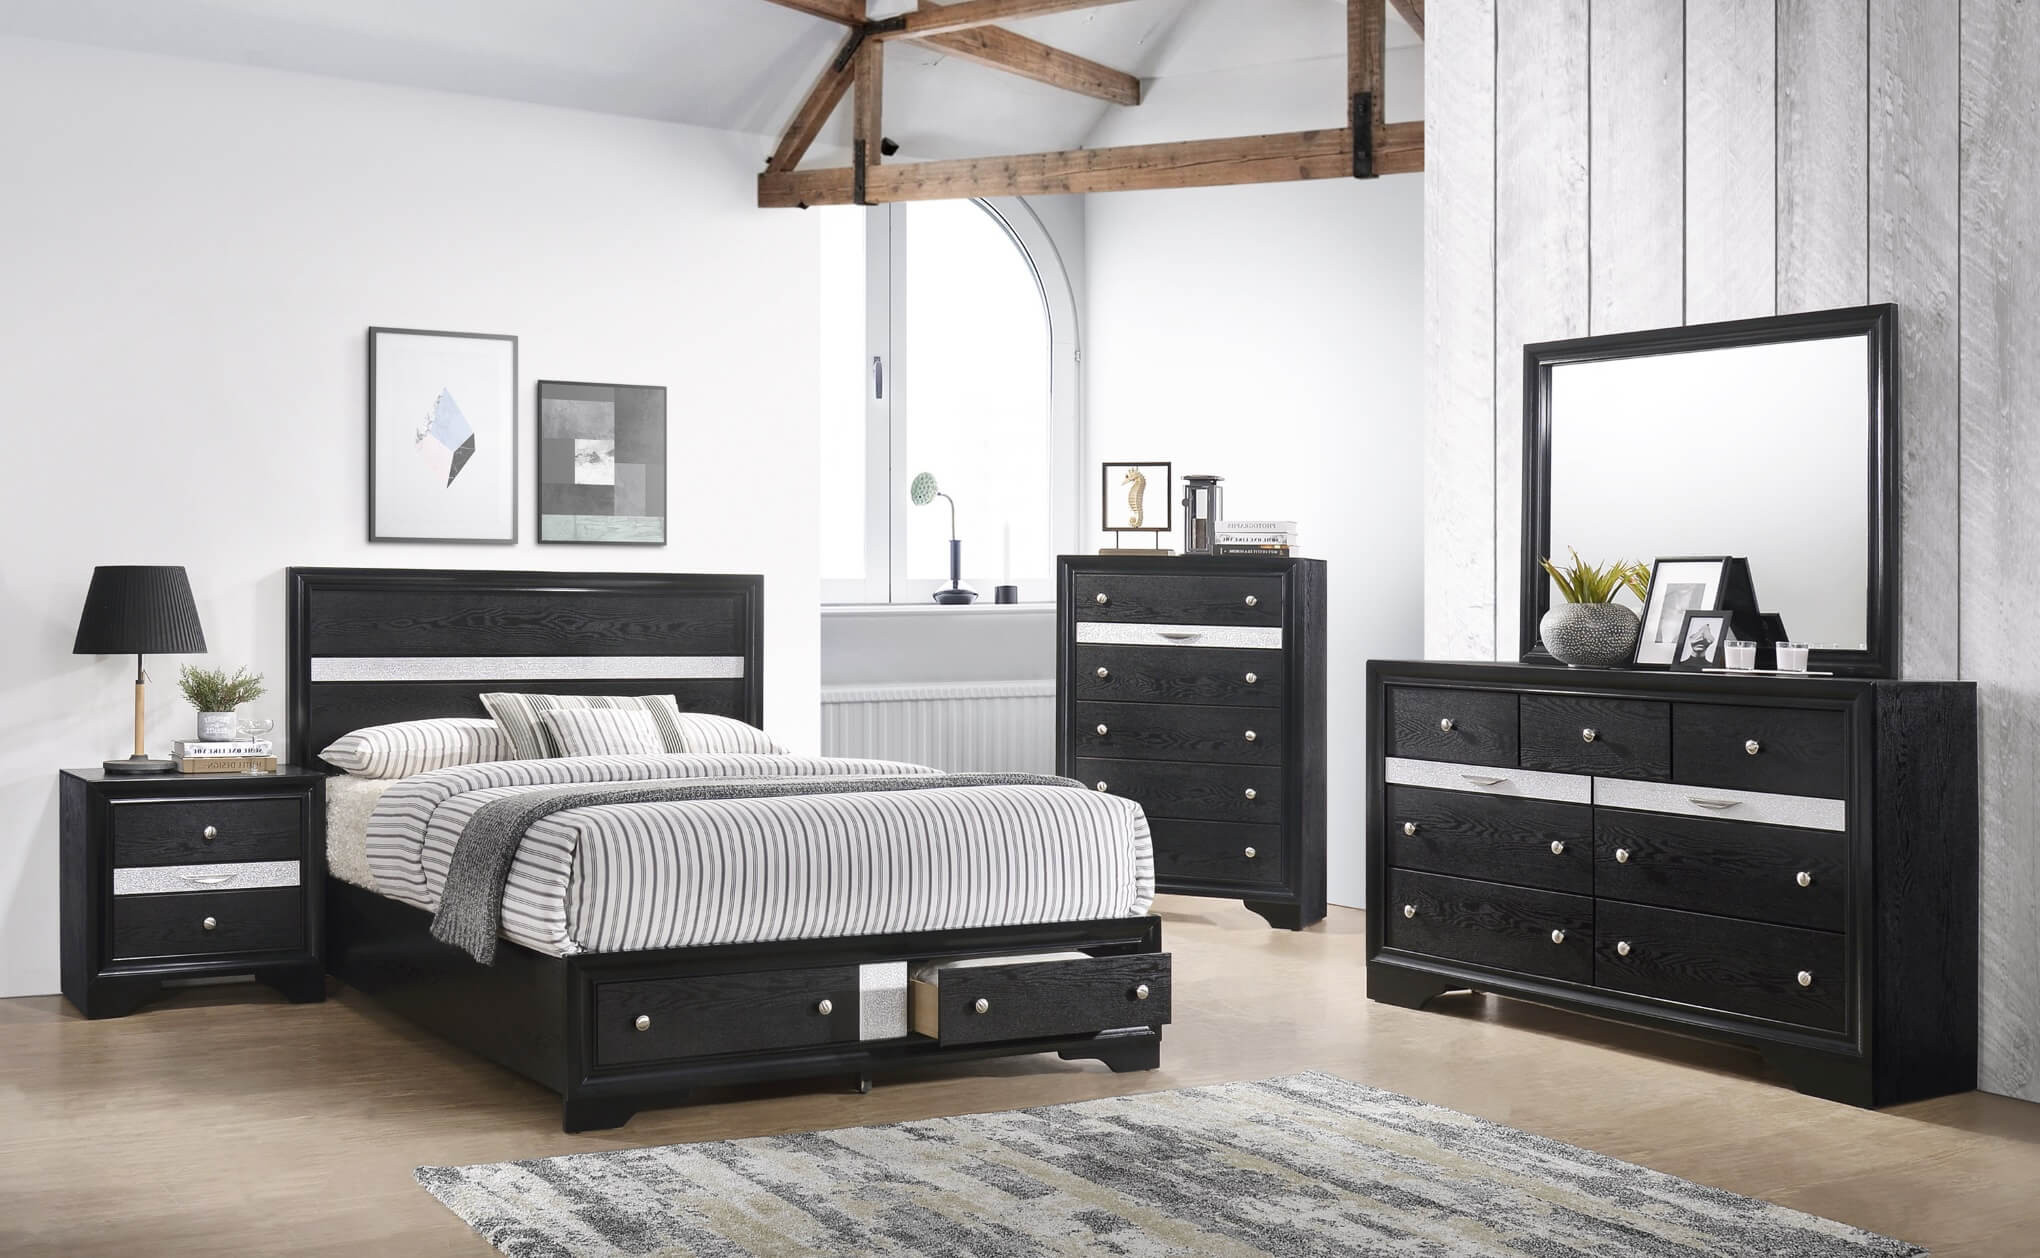 Bedroom Sets With Storage
 Regata Black Storage Bedroom Set